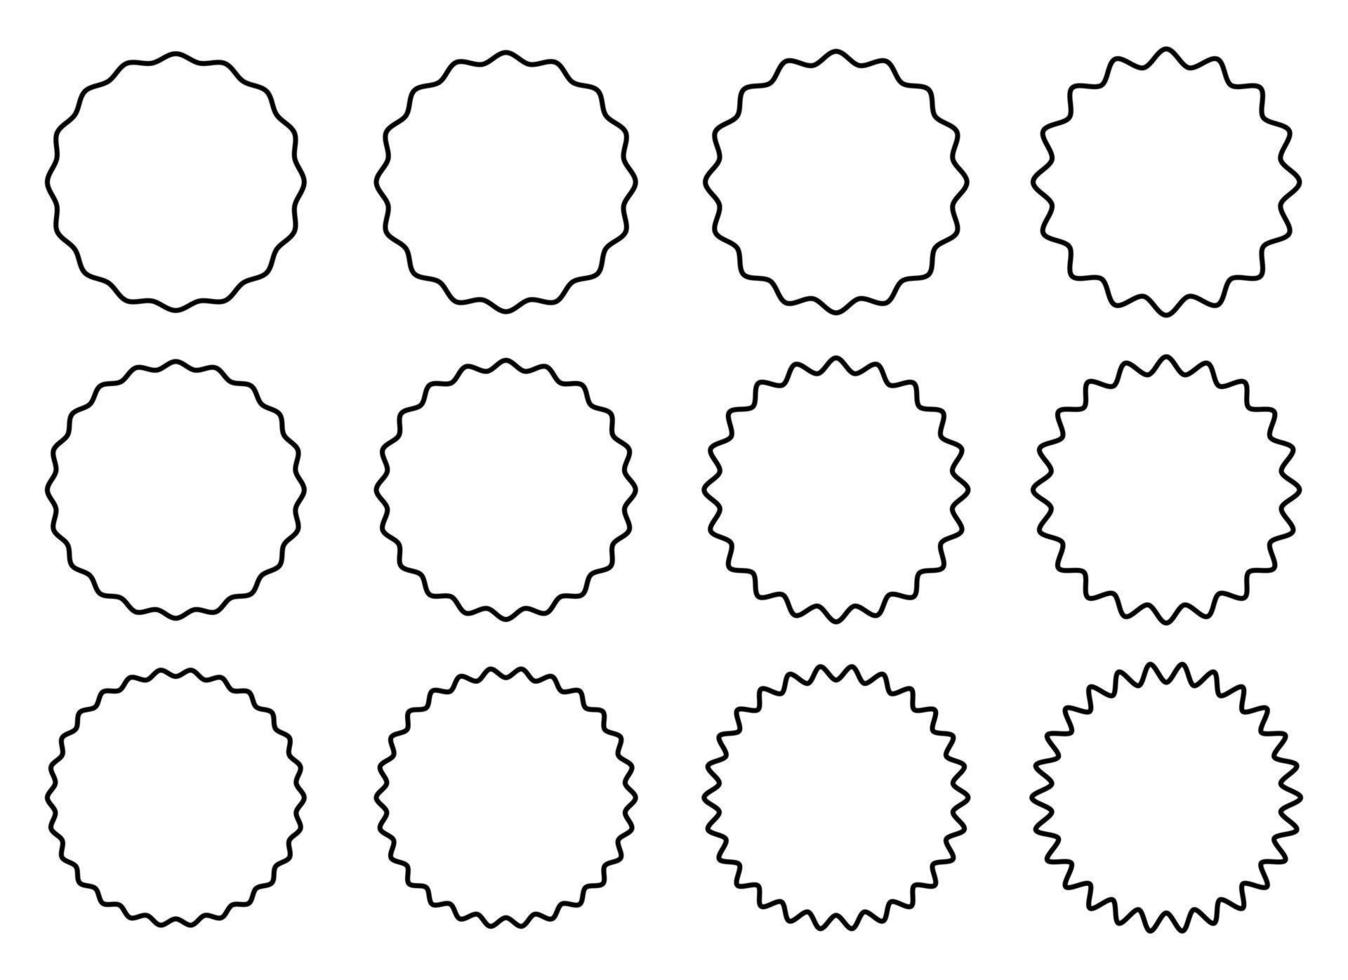 schwarze einfache Fahnenvektor-Designillustration lokalisiert auf weißem Hintergrund vektor